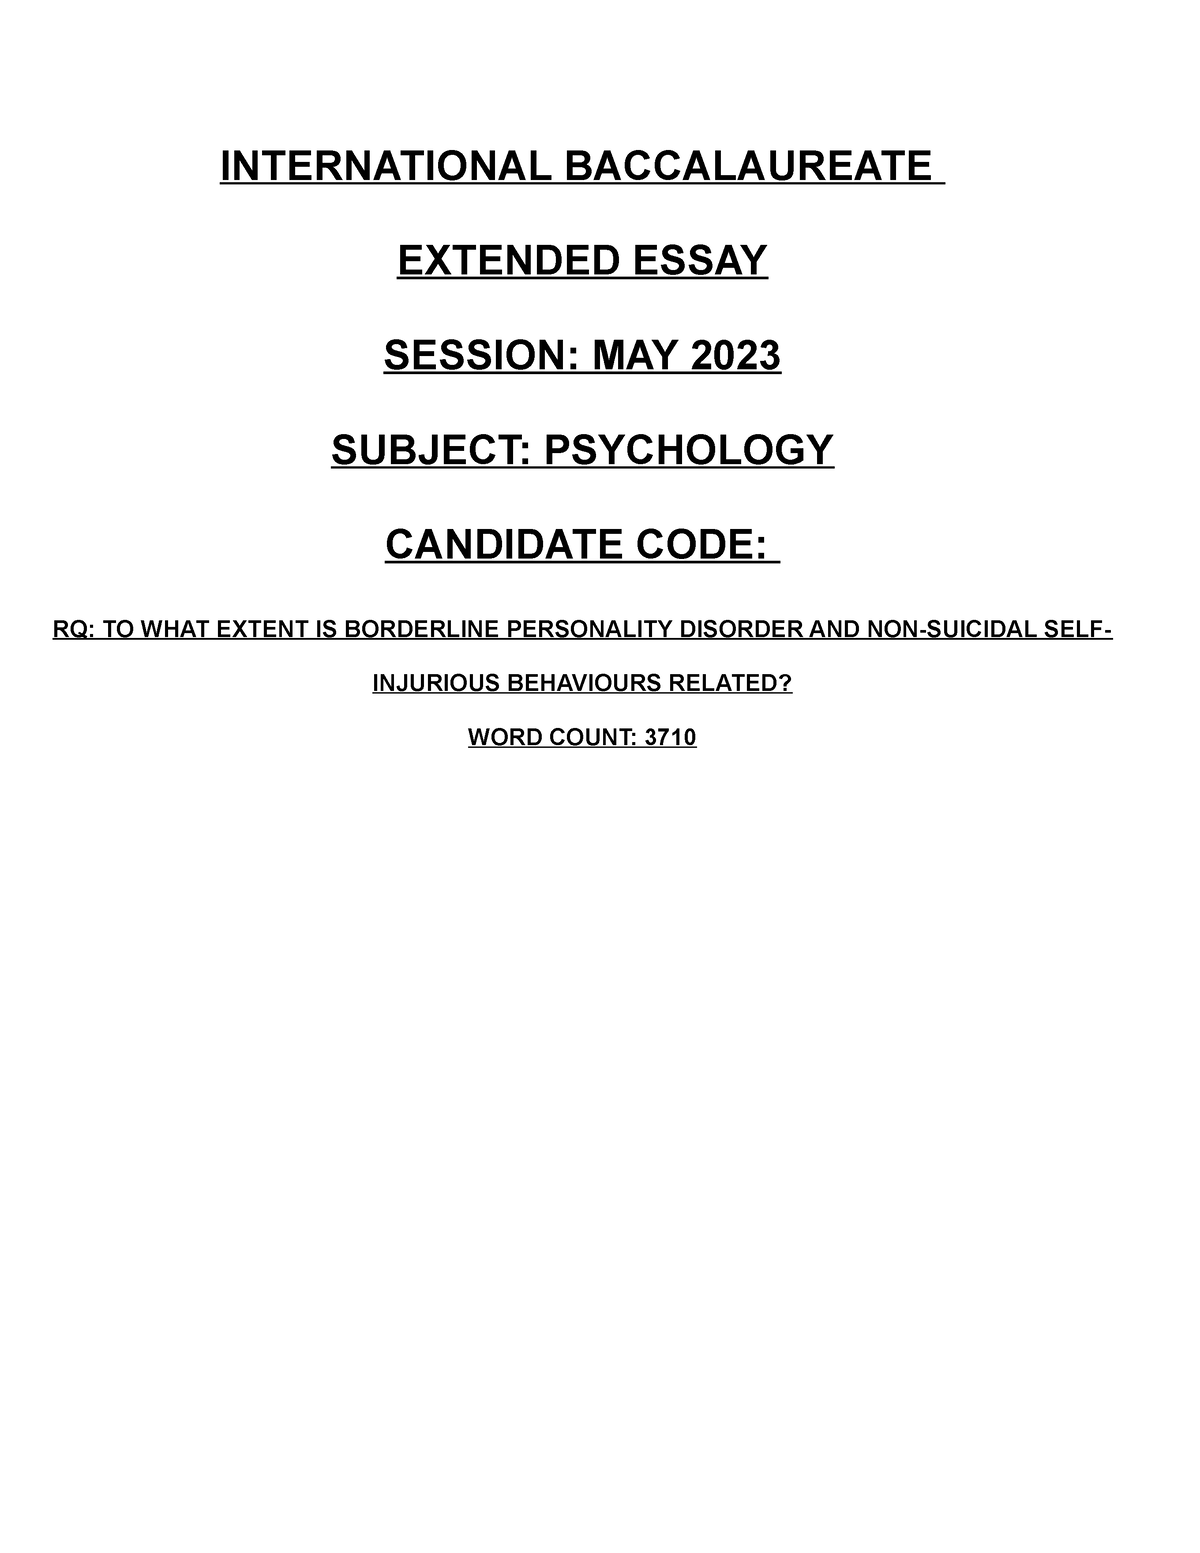 extended essay ib psychology